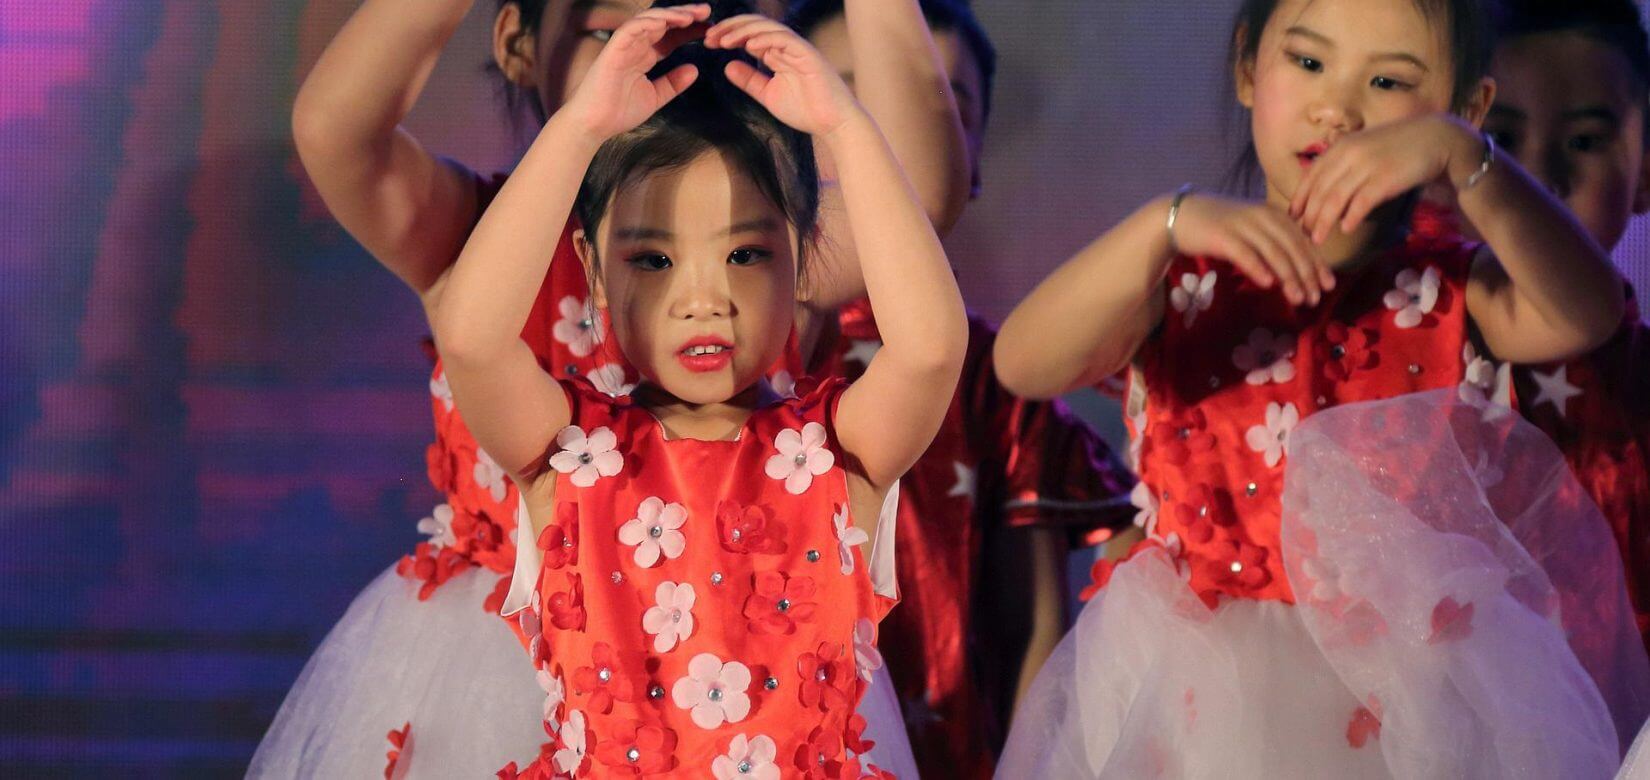 «Πότε θα κάνετε παιδί;» ρωτούν τις νεόνυμφες στην Κίνα